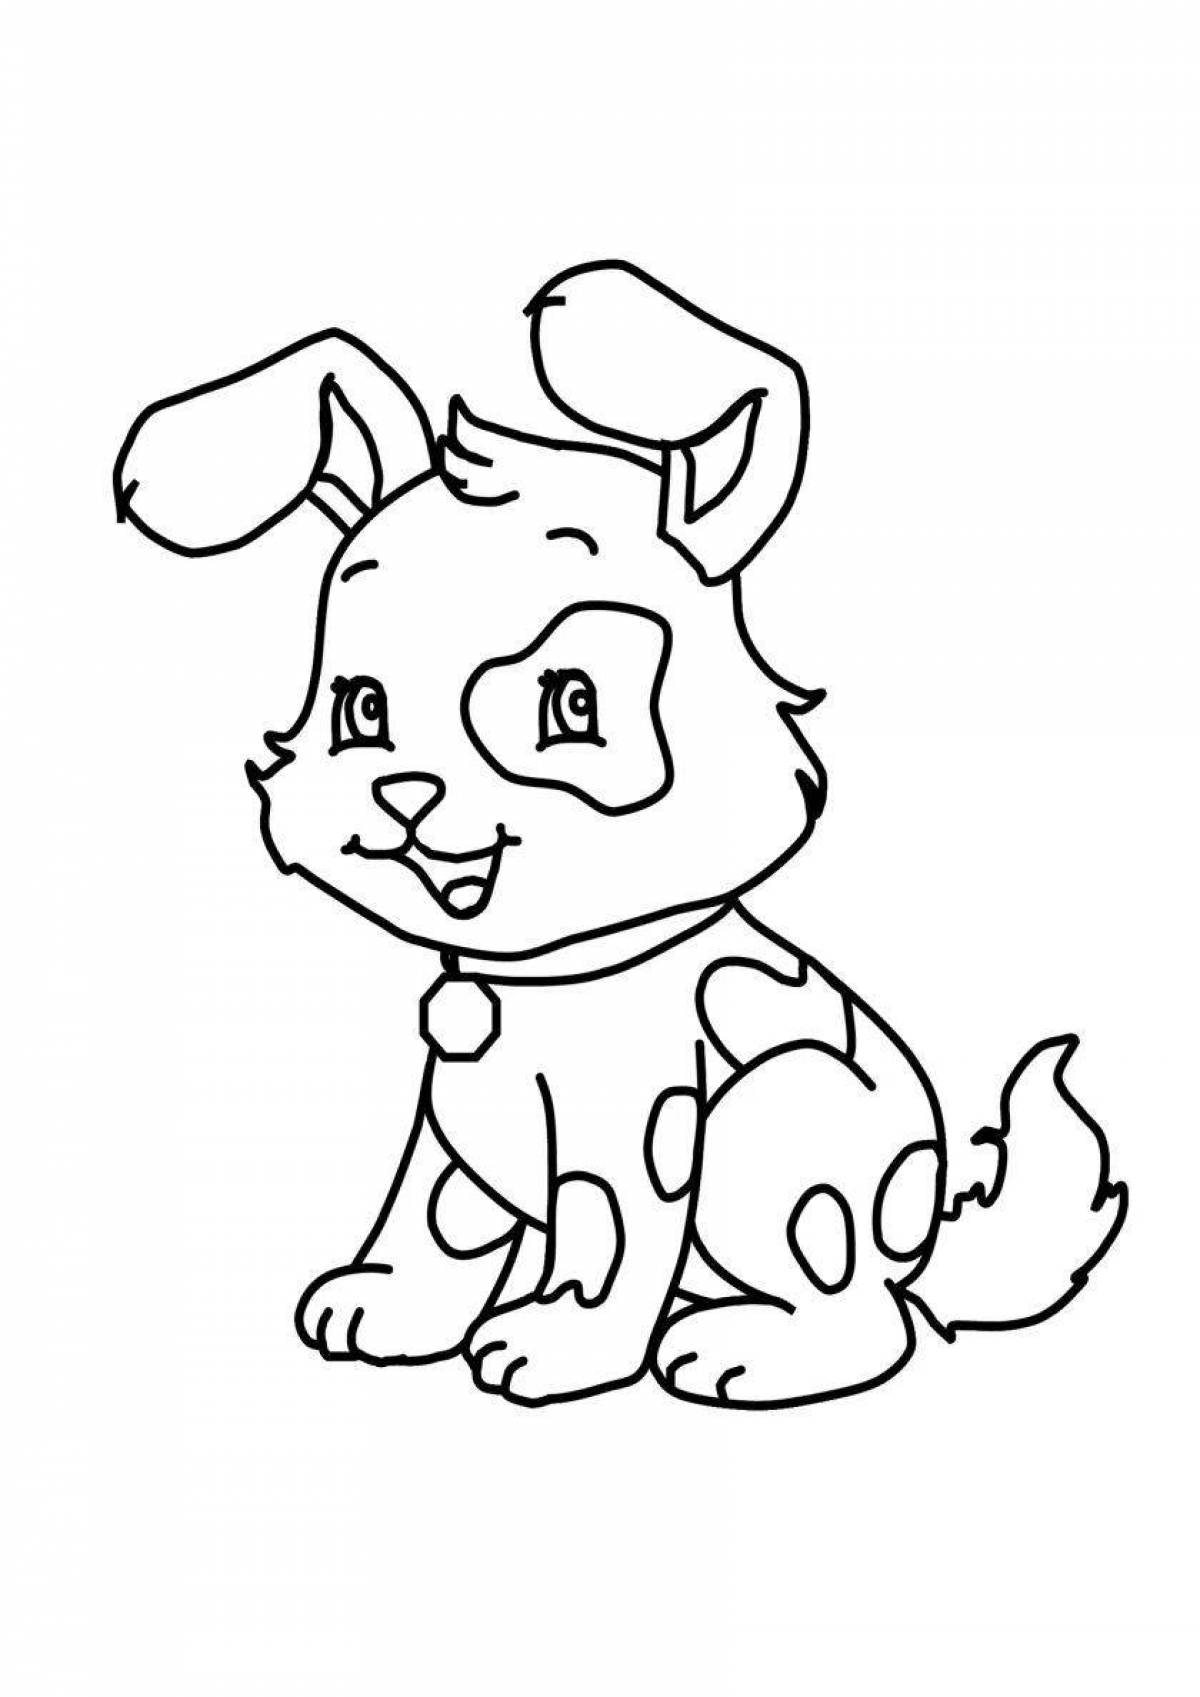 Остроумная раскраска собака для детей 5-6 лет